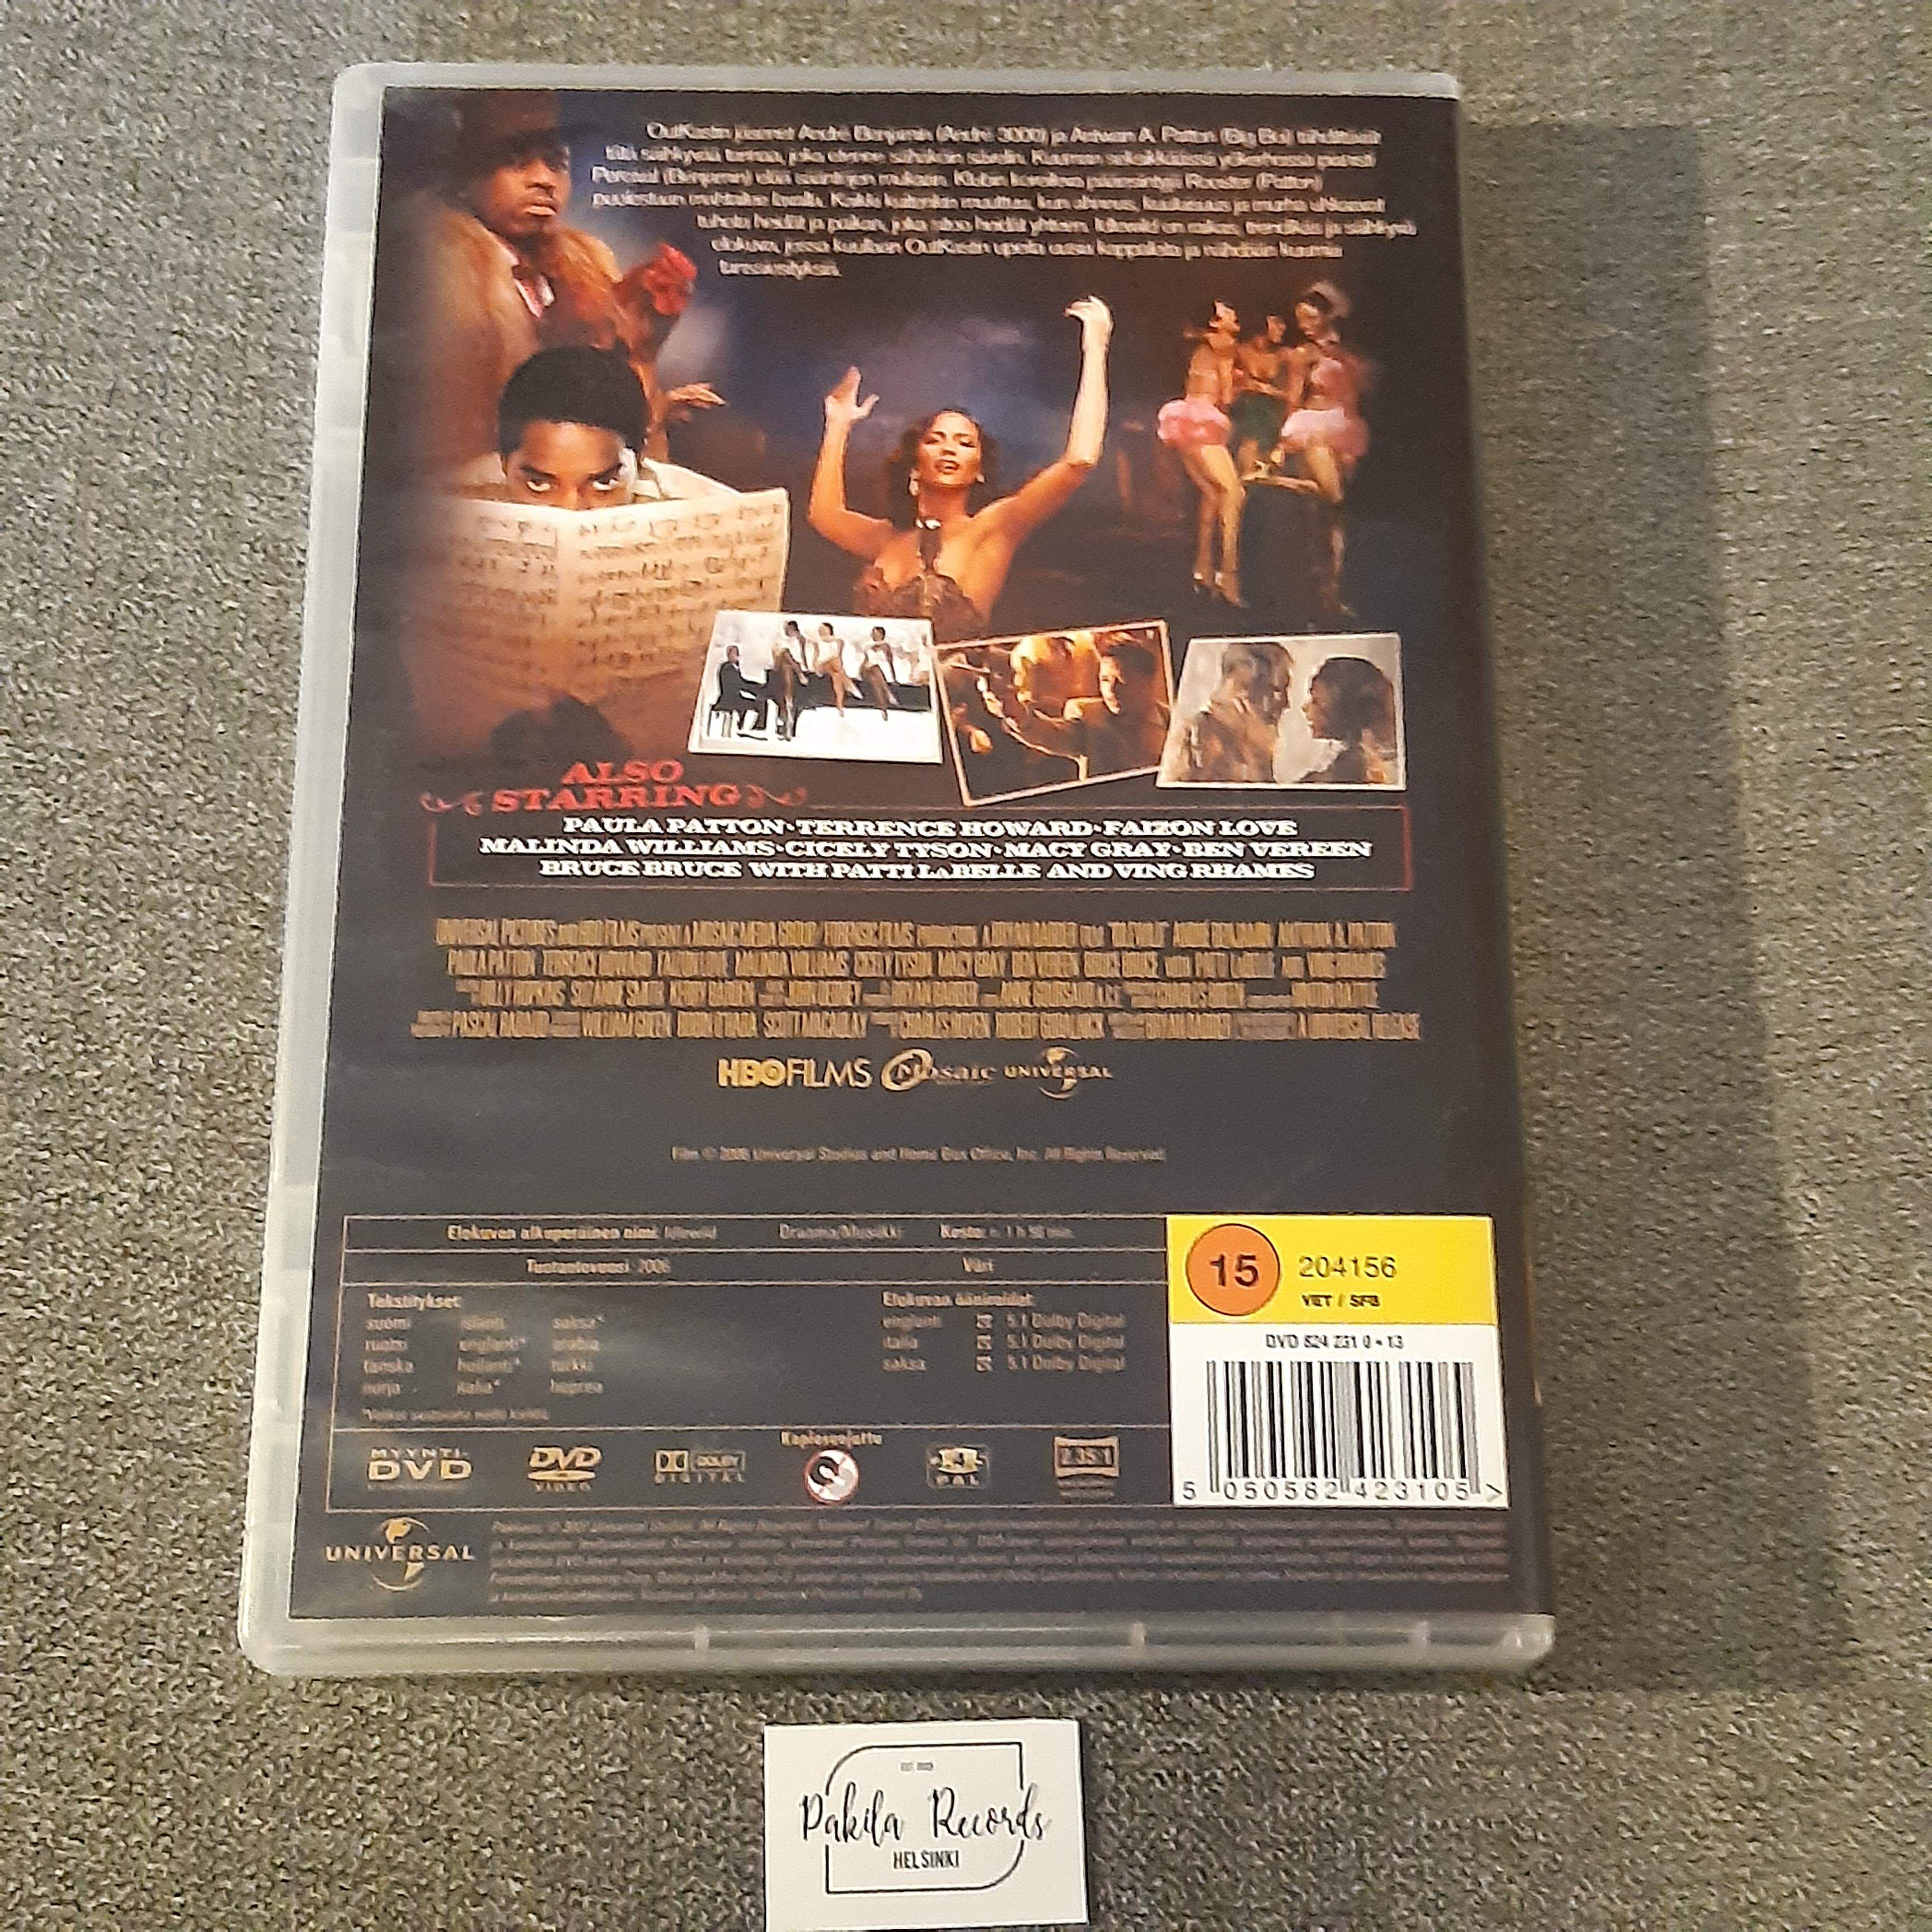 Idlewild - DVD (käytetty)